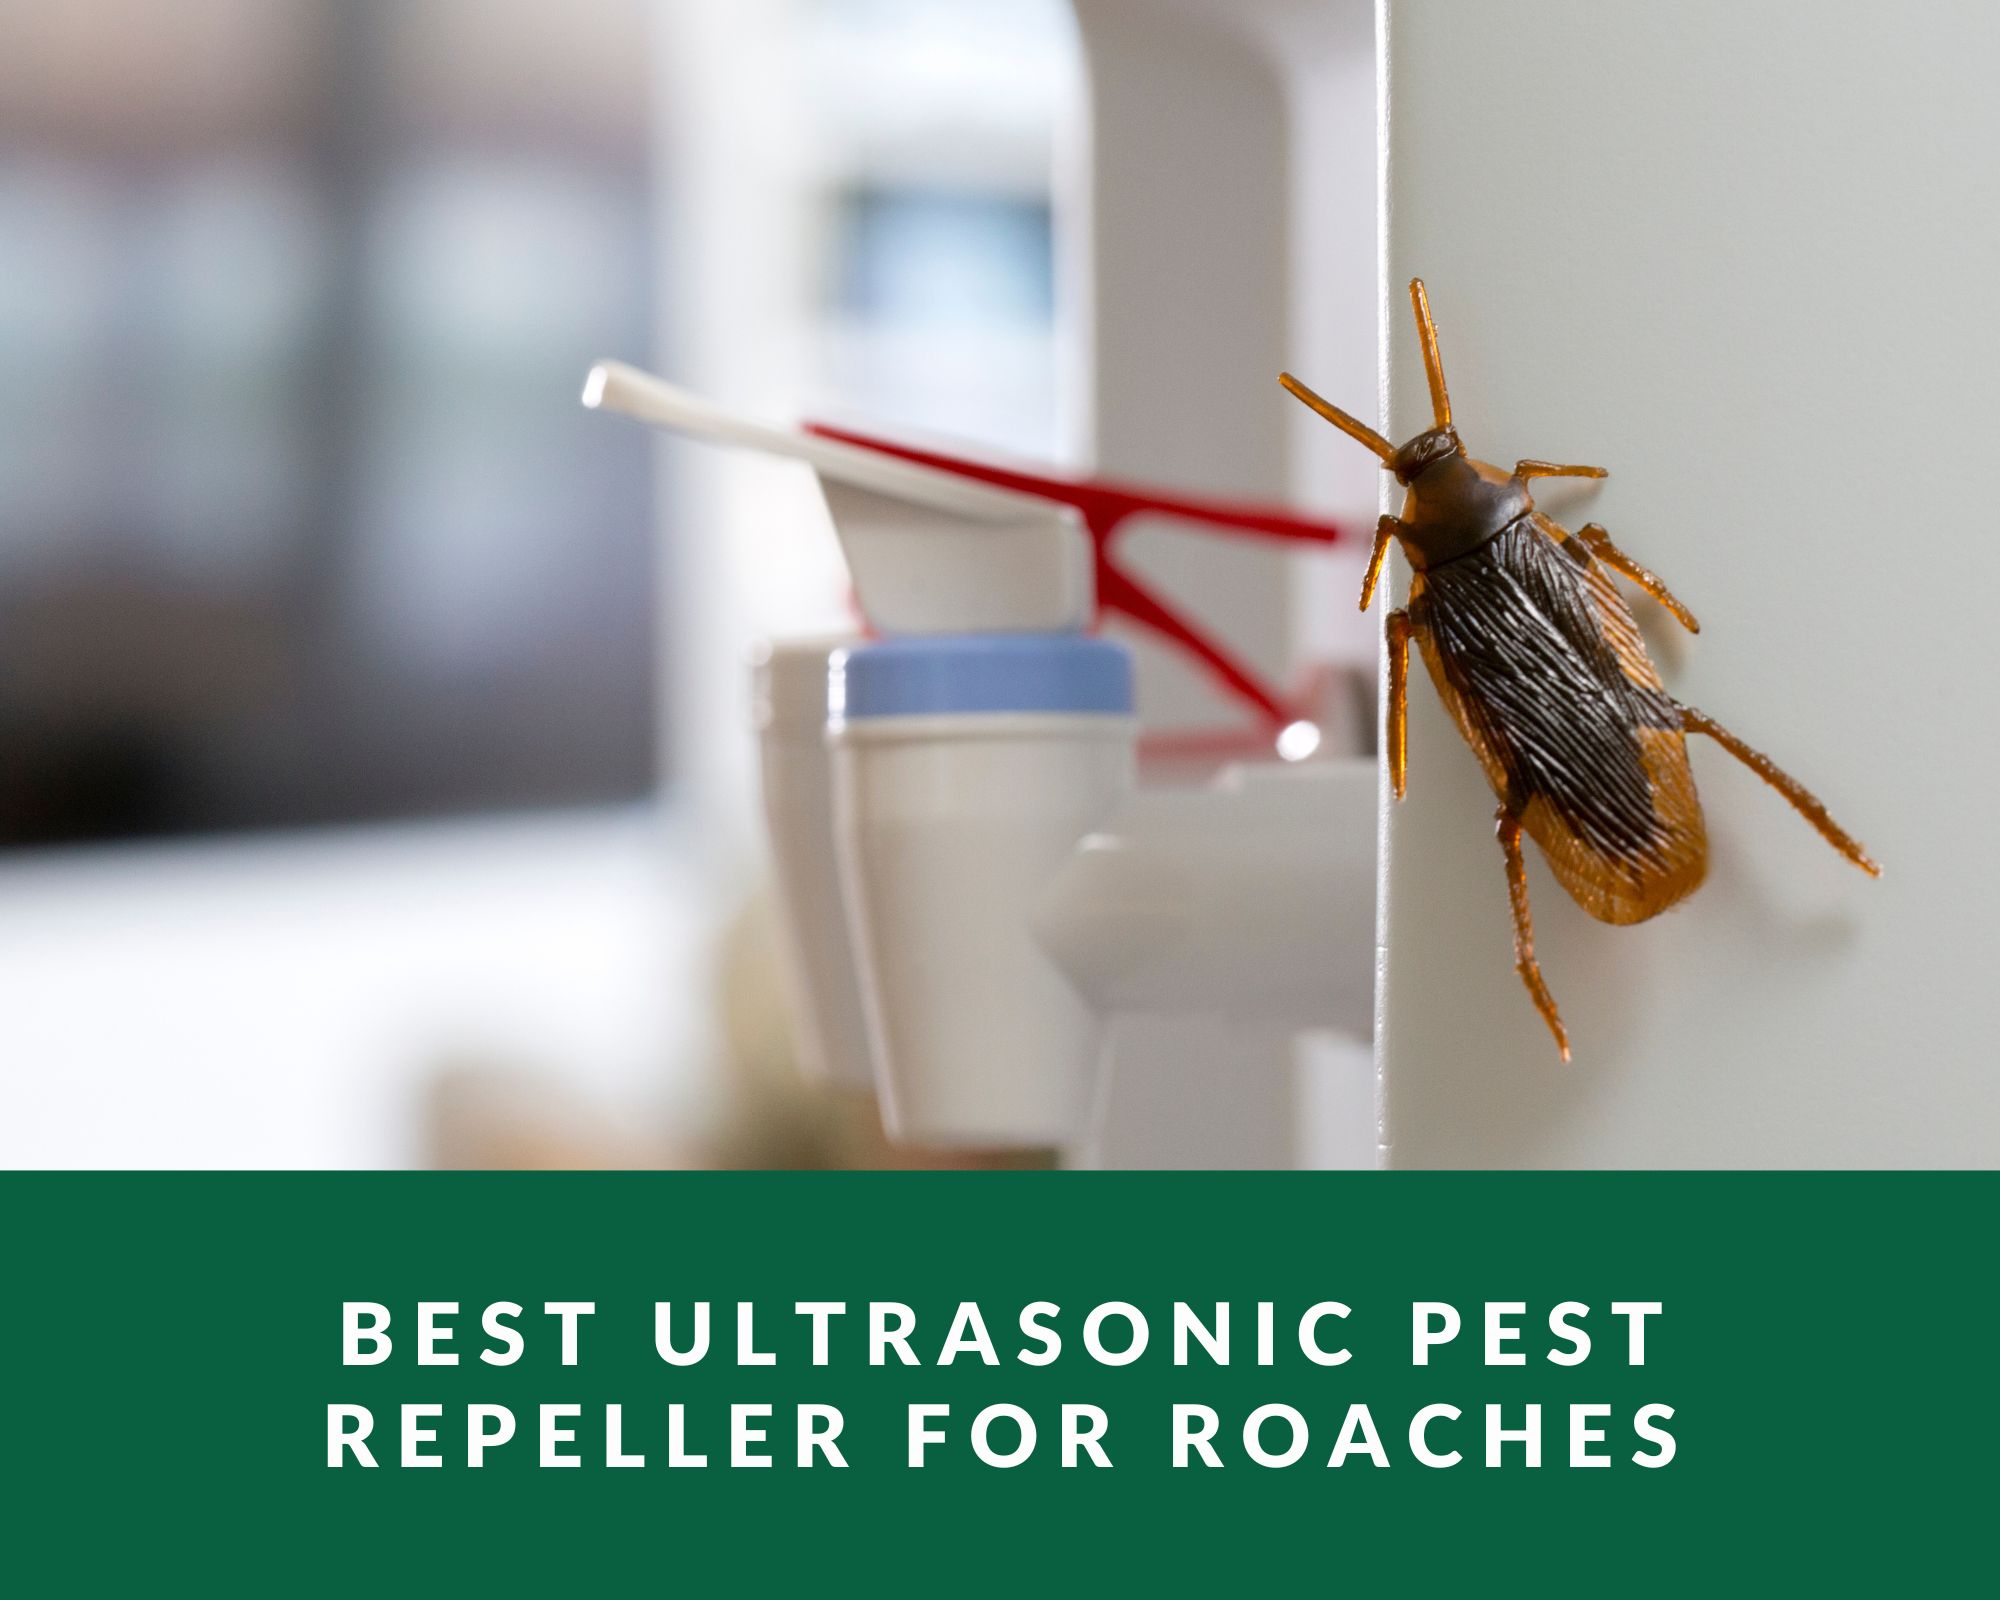 Best ultrasonic pest repeller for roaches